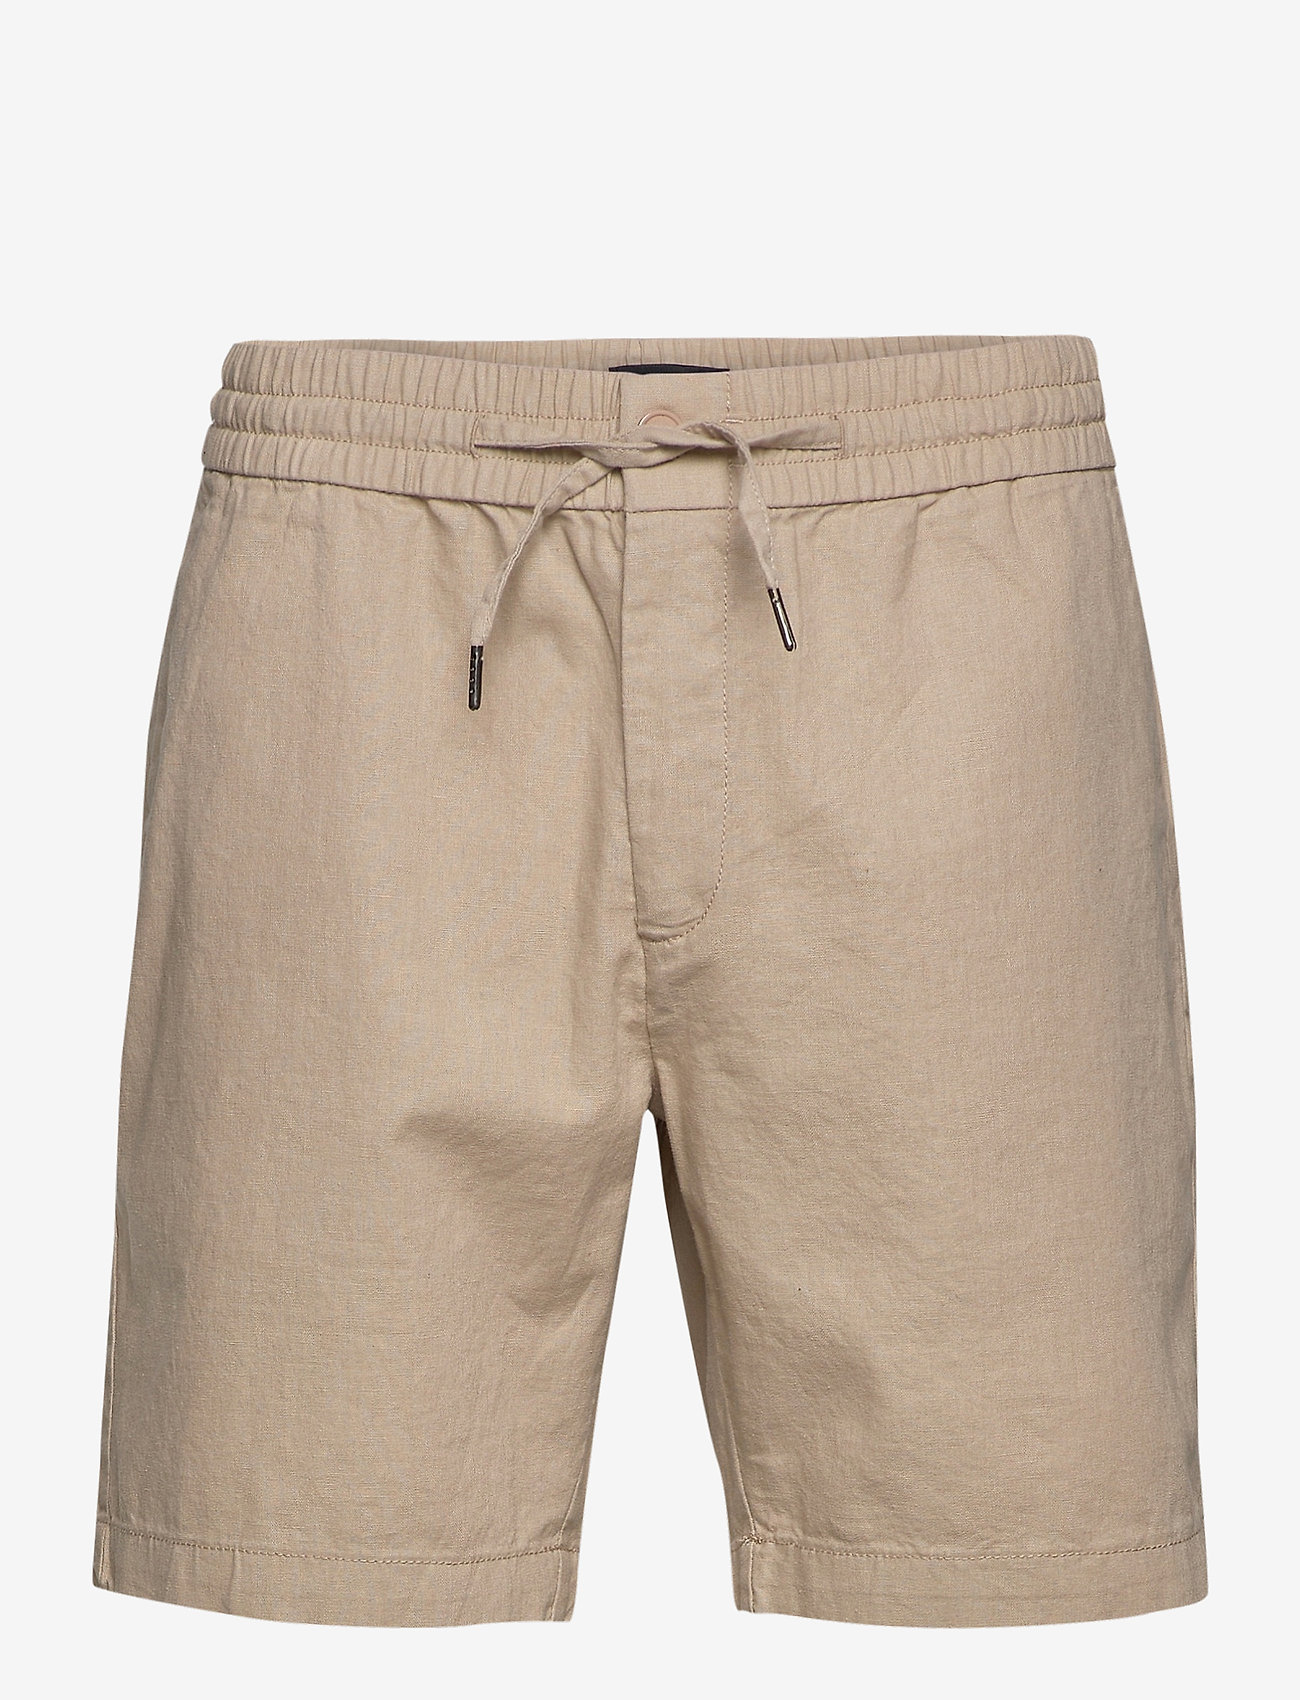 Clean Cut Copenhagen - Barcelona Cotton / Linen Shorts - linnen shorts - khaki - 1